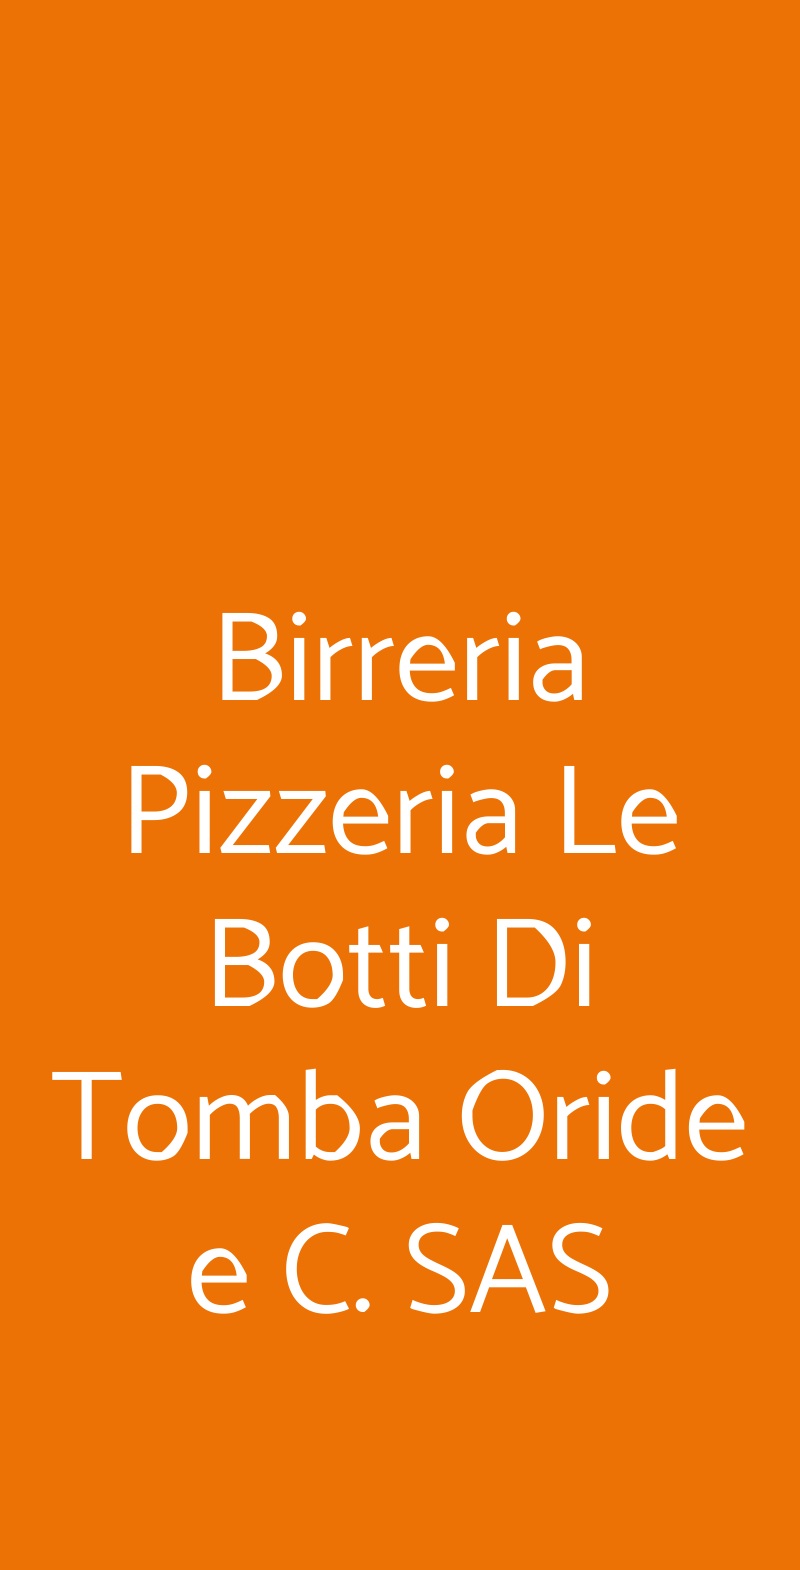 Birreria Pizzeria Le Botti Di Tomba Oride e C. SAS Solesino menù 1 pagina